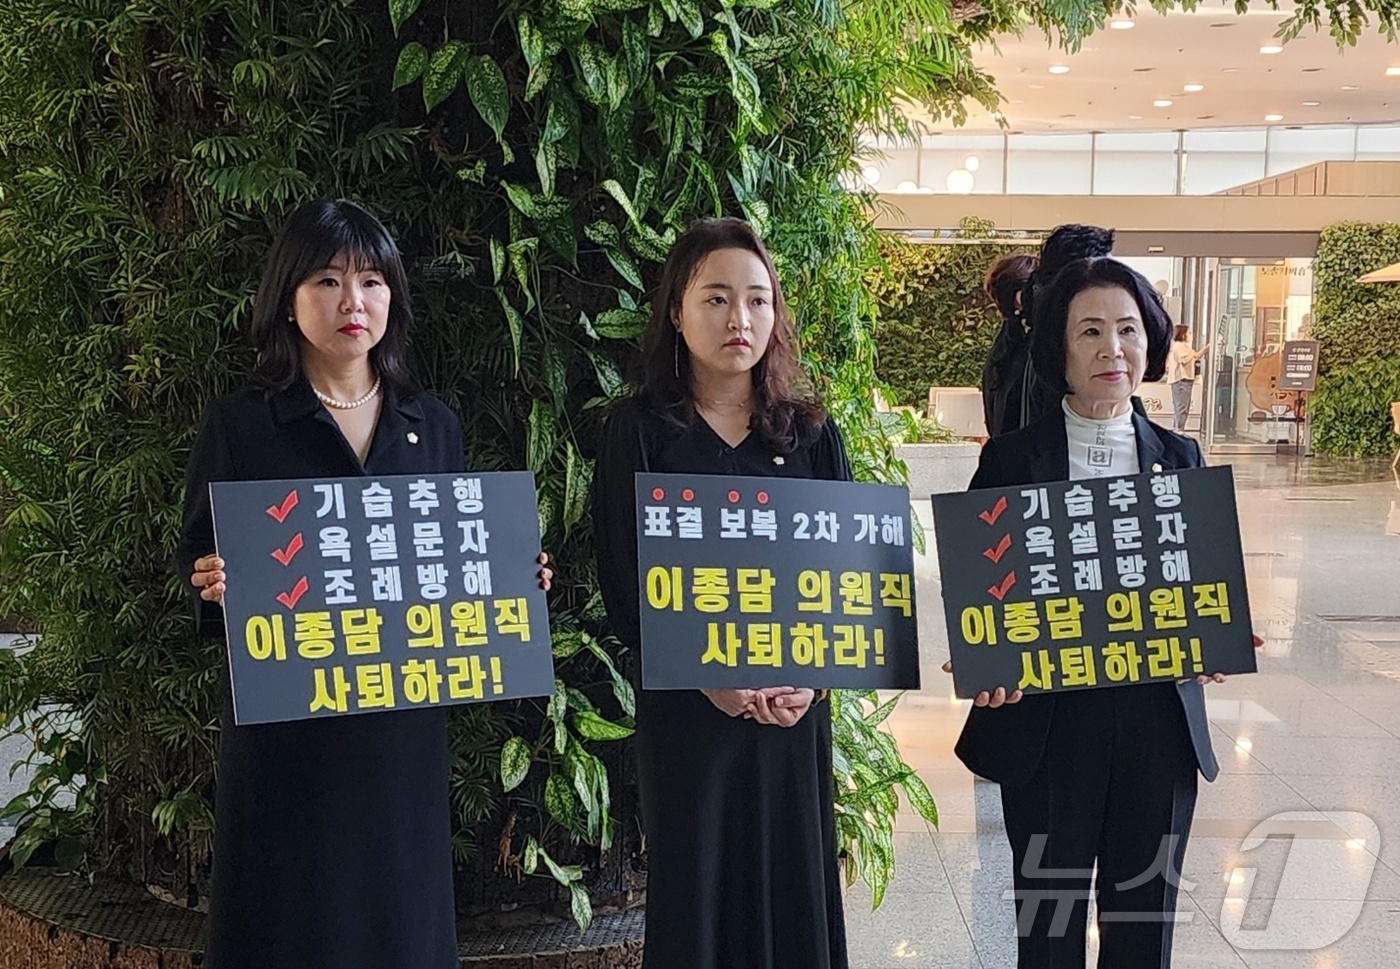 (천안=뉴스1) 이시우 기자 = 10일 천안시청 로비에서 천안시의회 여성의원들이 비속어가 담긴 문자메시지를 발송한 이종담 시의원의 사퇴를 촉구하는 피켓을 들고 서 있다.이종담 의원 …